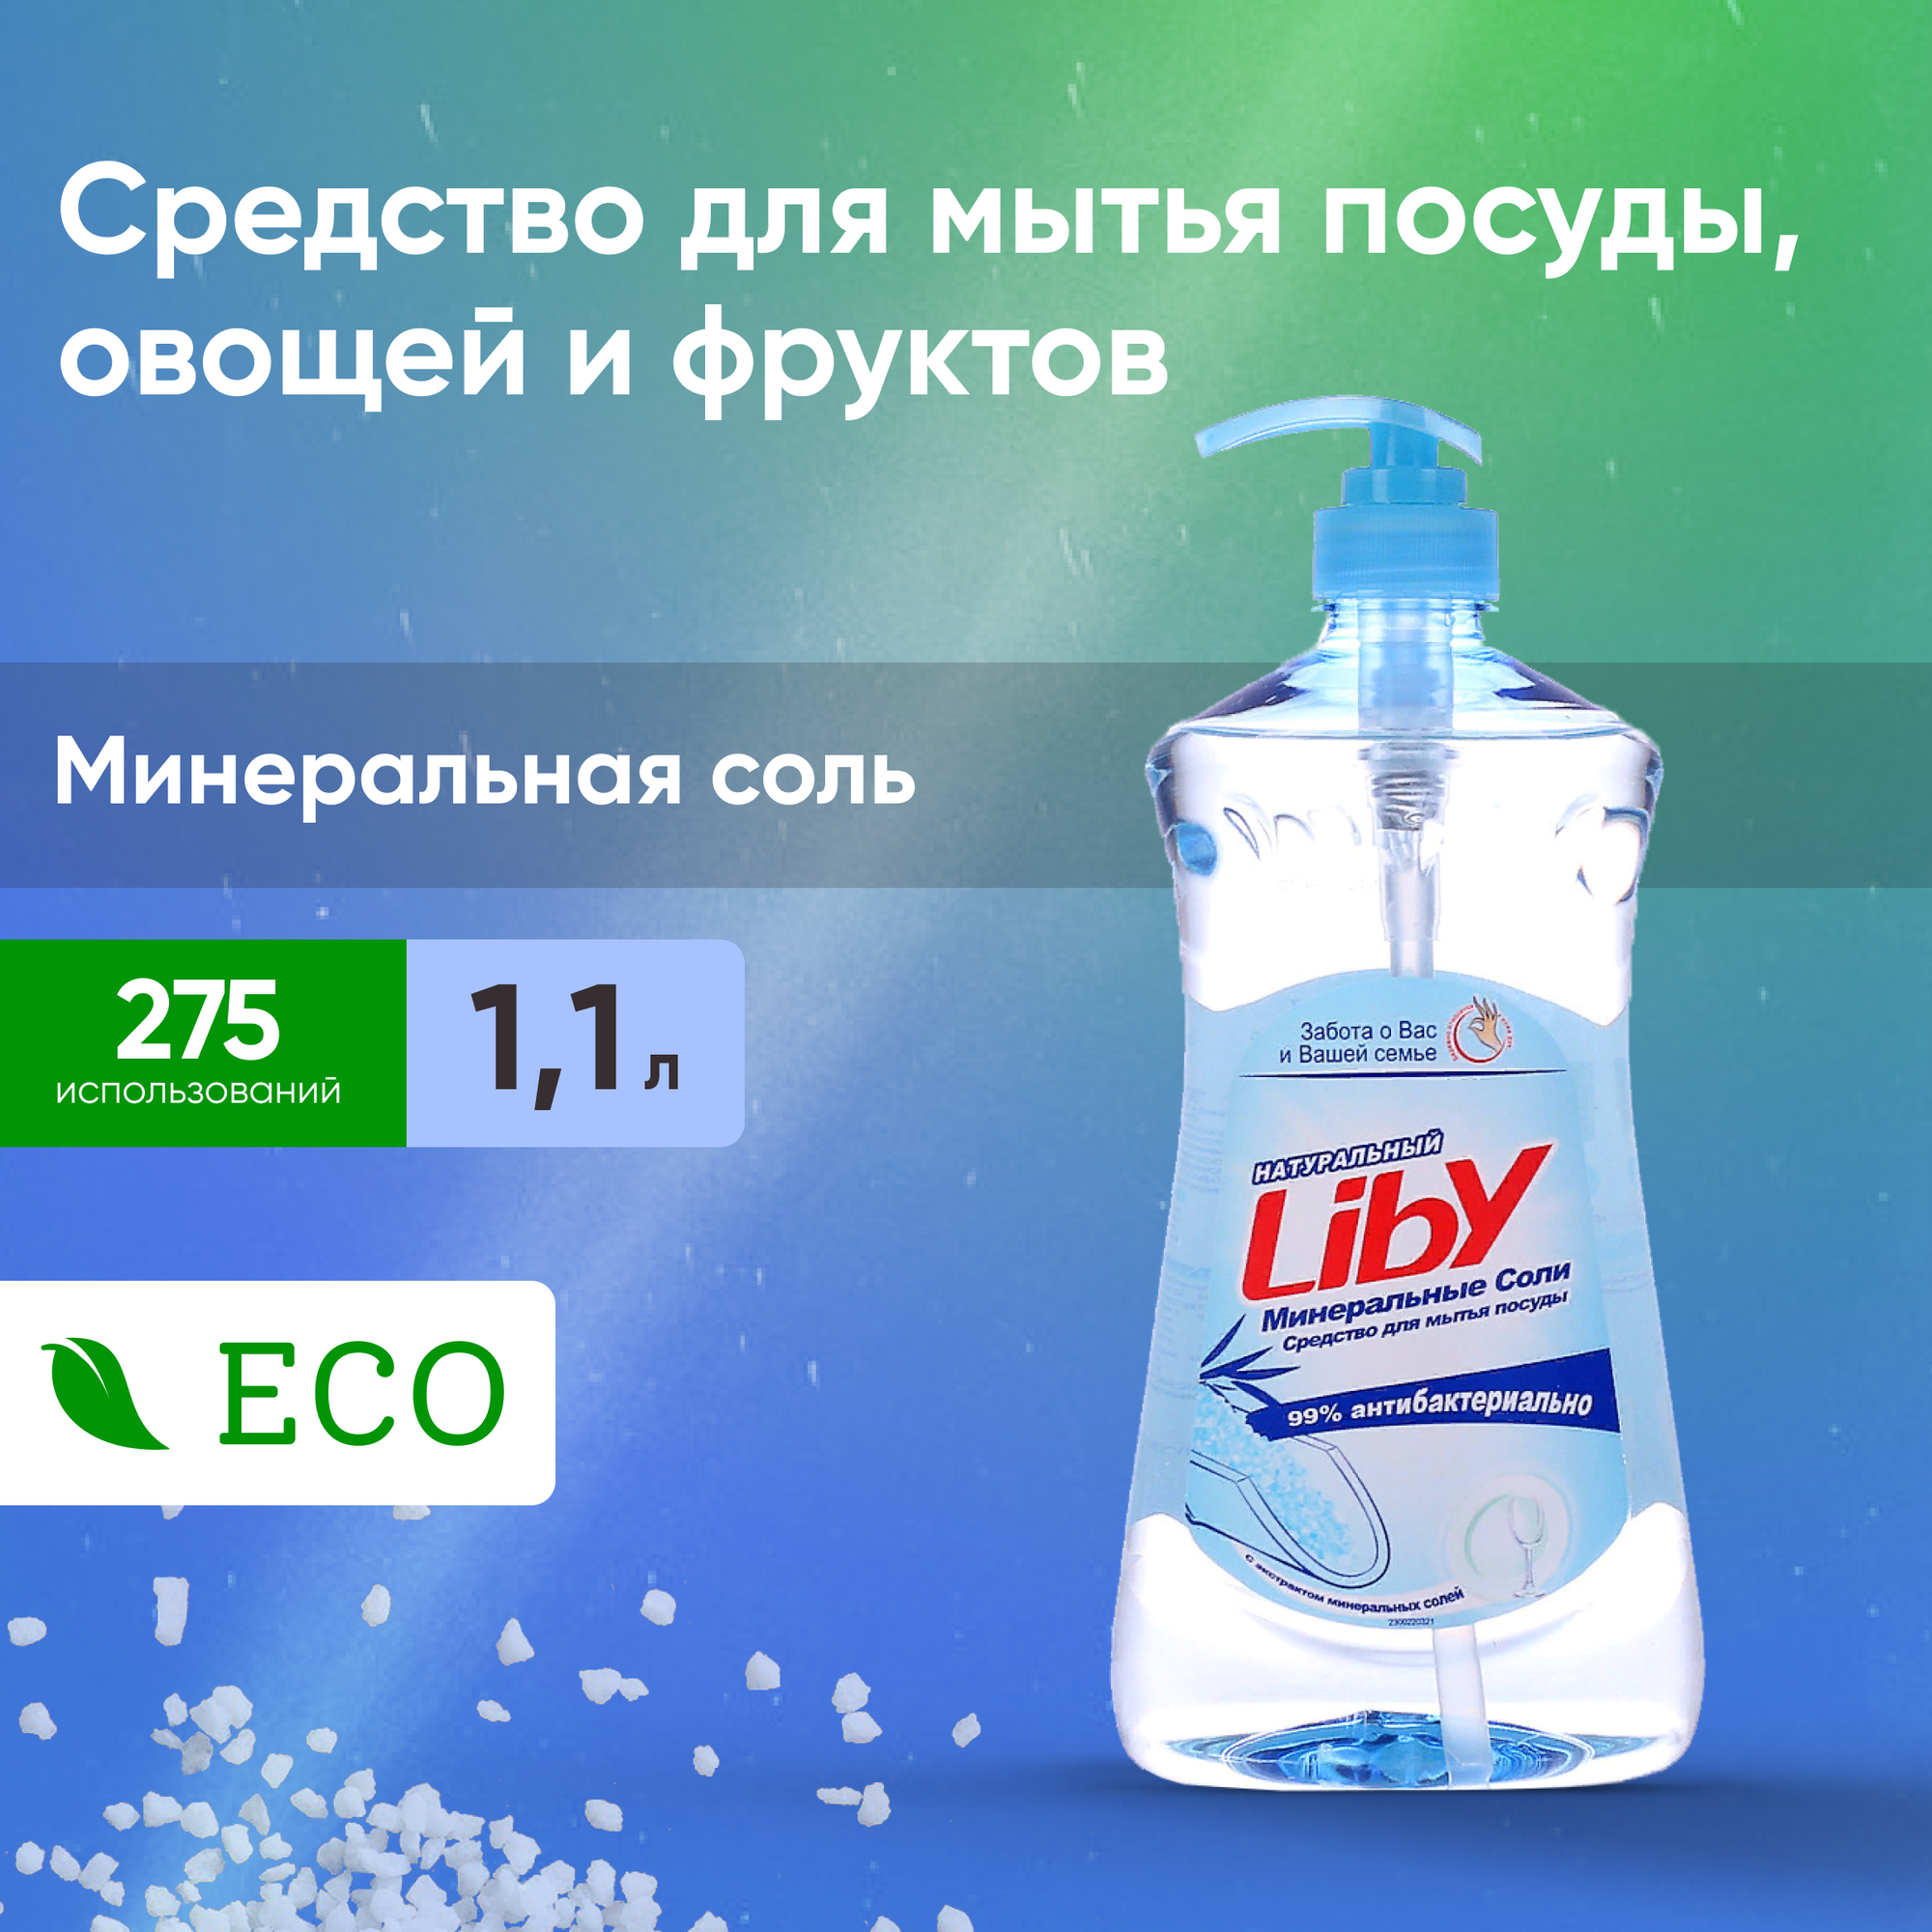 Liby Жидкость для посуды Минеральная соль 1.1 кг